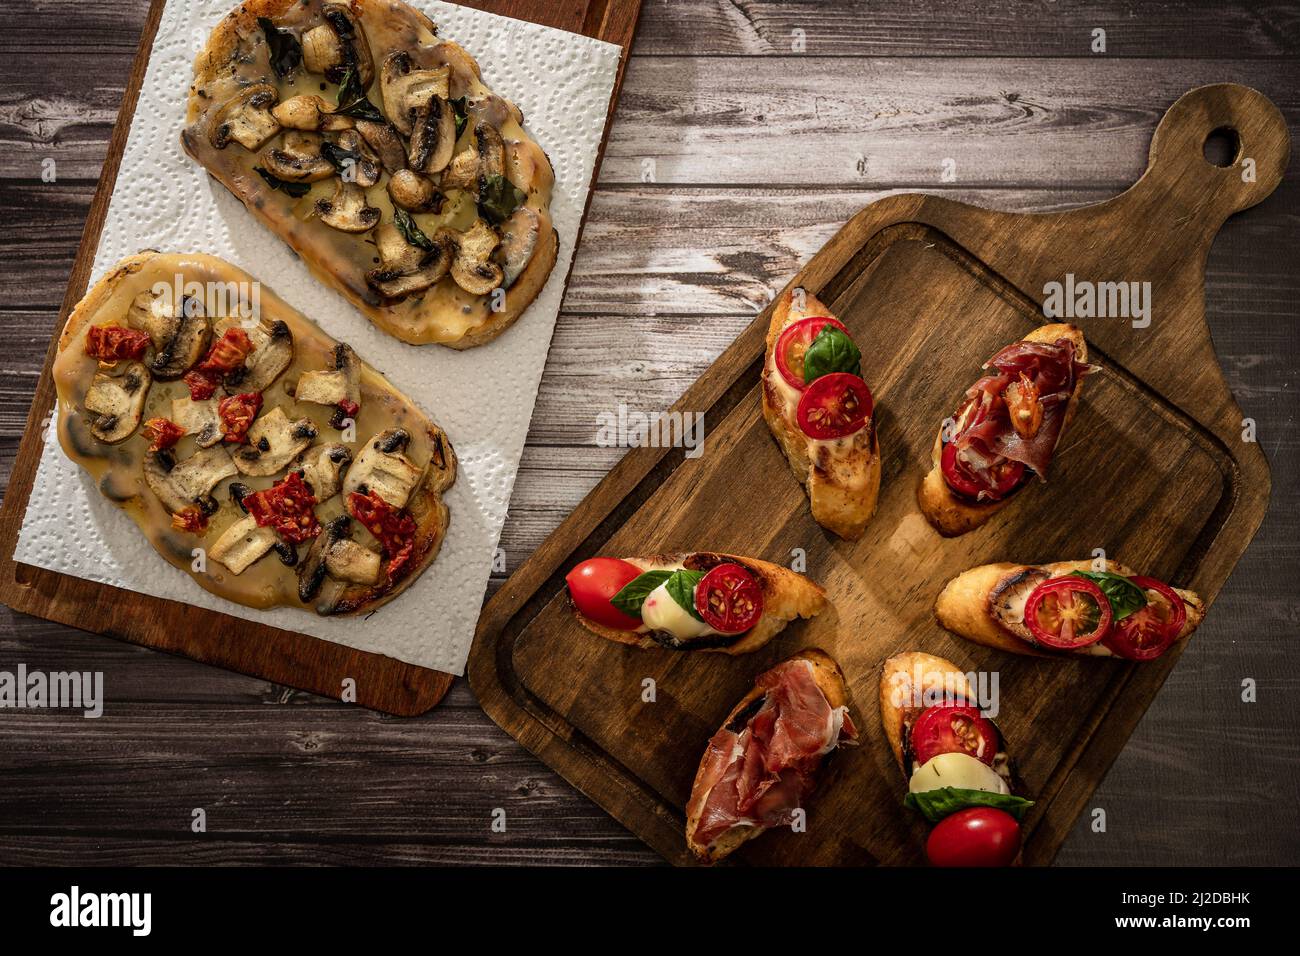 Arrangement d'une sélection de différents tapas ou bruschettas sur un panneau en bois. Concept alimentaire méditerranéen. Banque D'Images